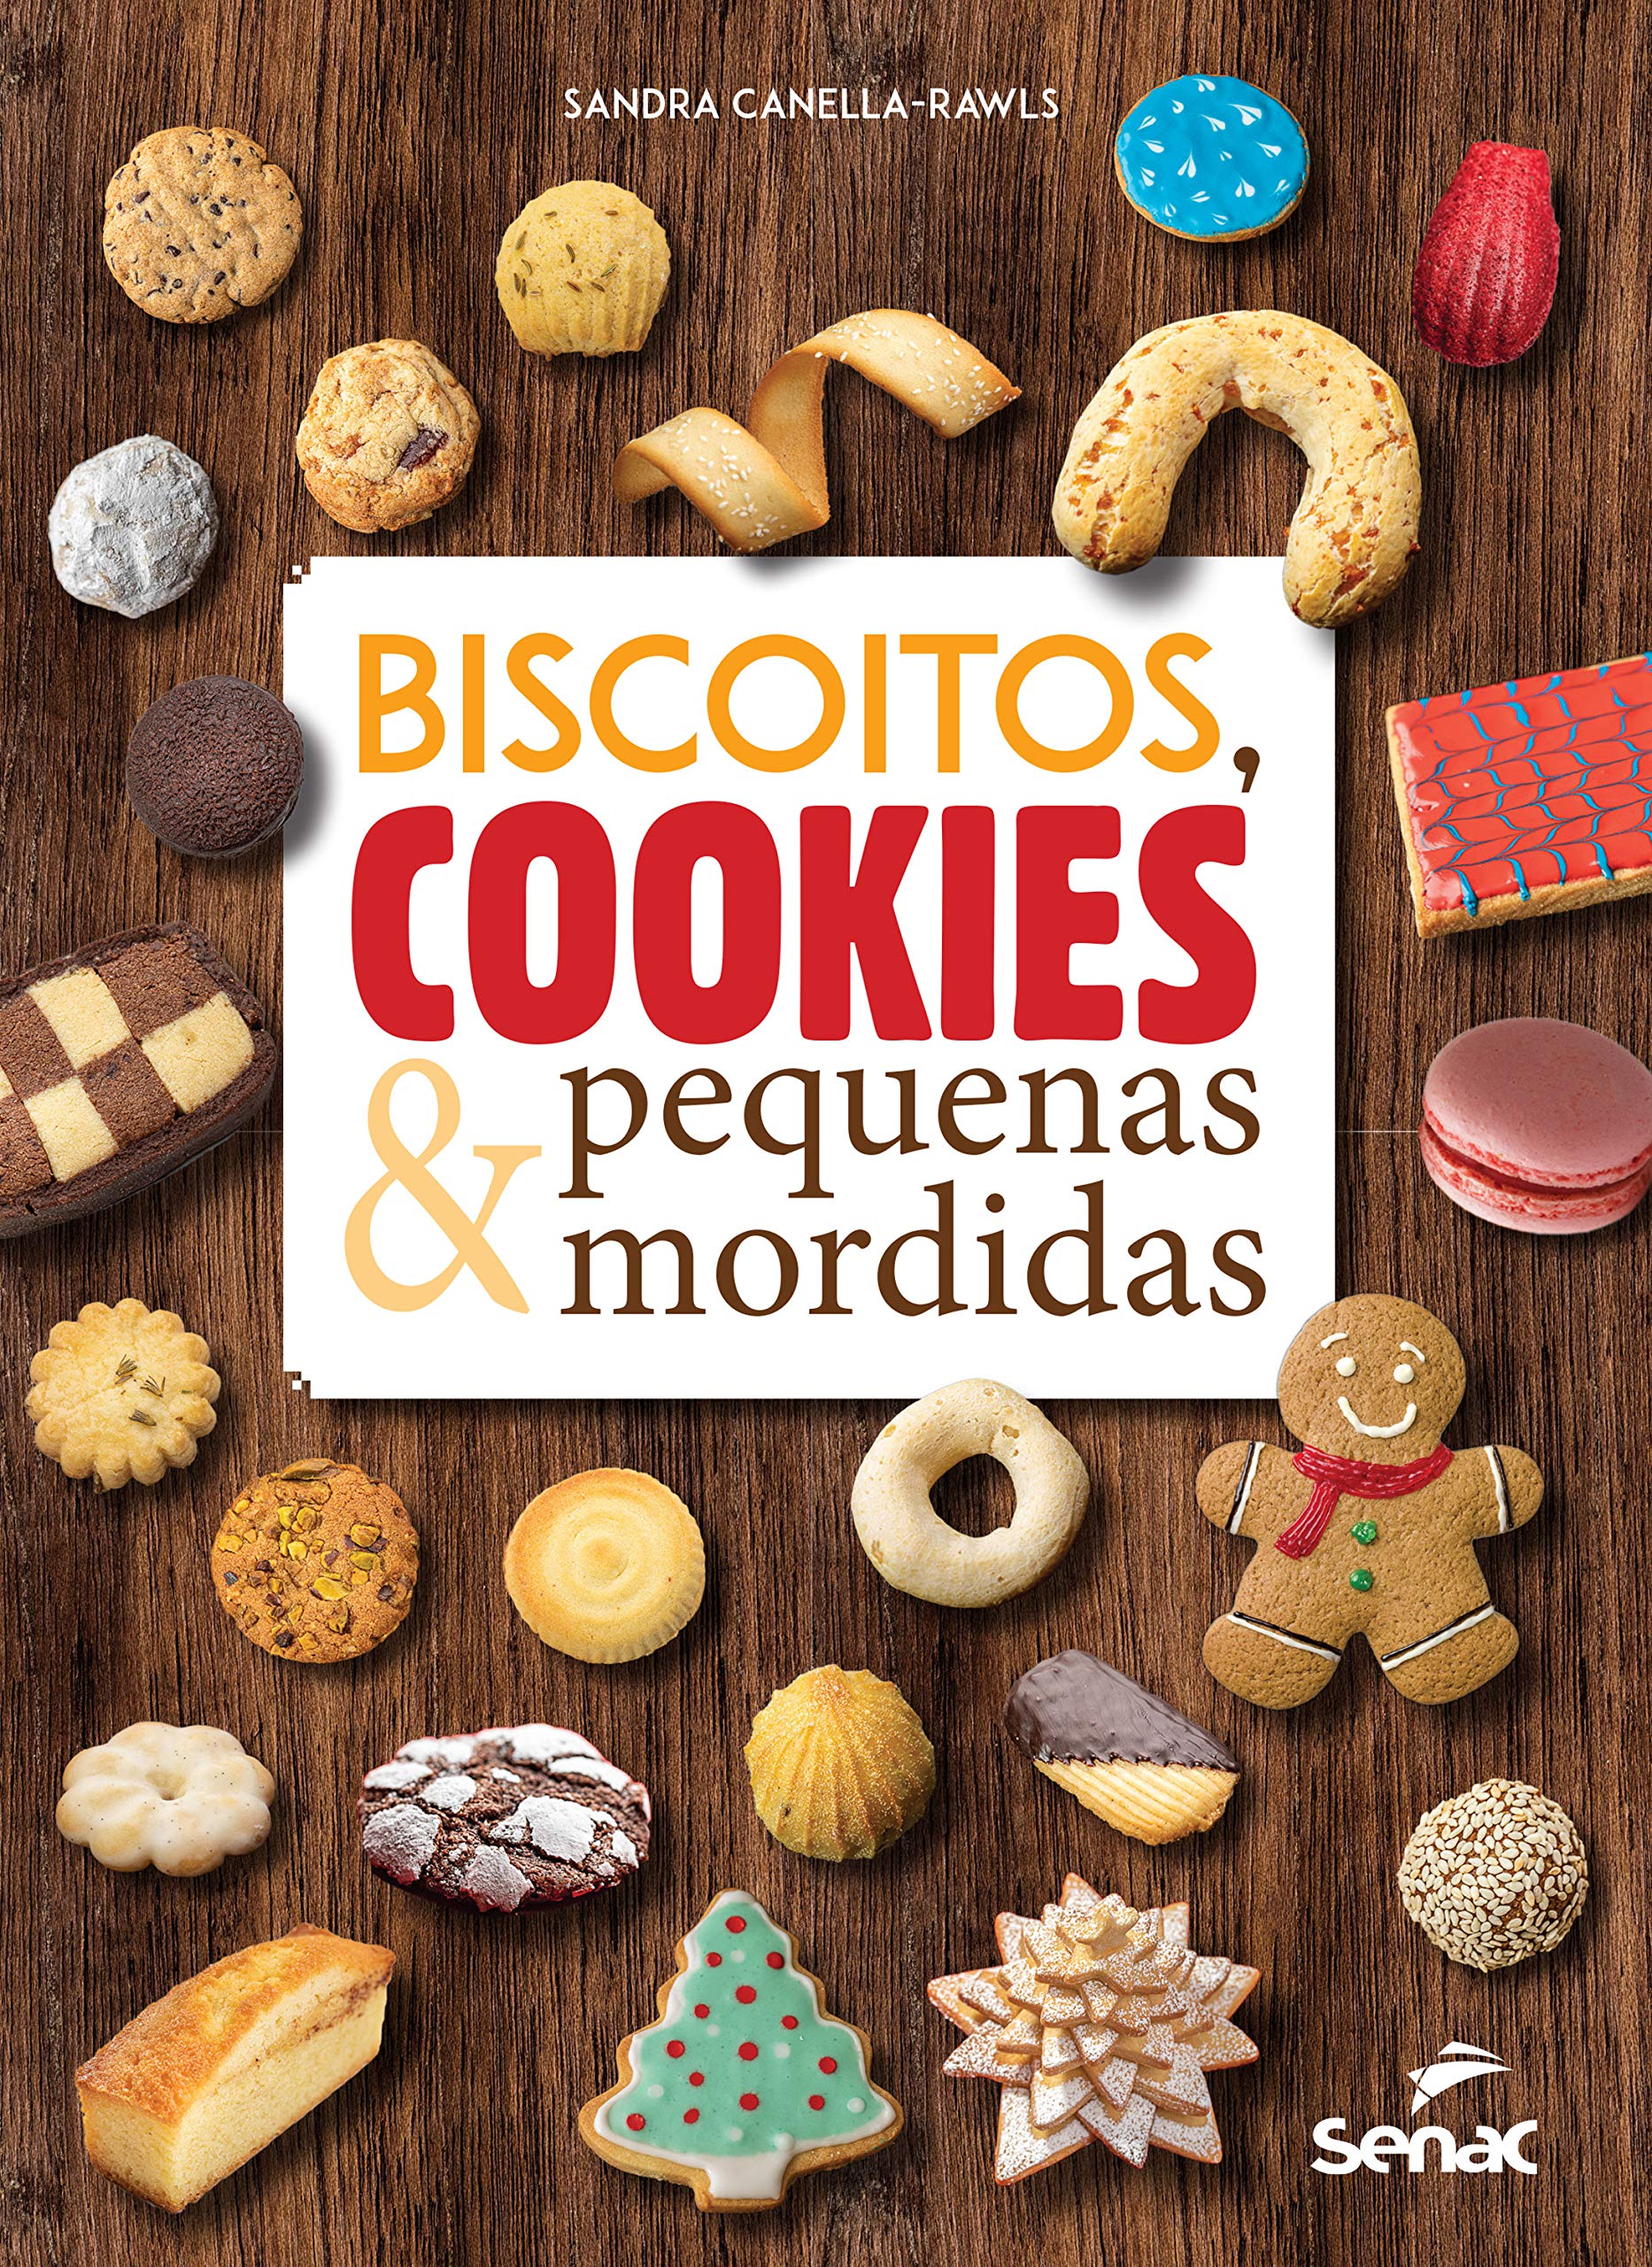 Biscoitos, cookies & pequenas mordidas (Portuguese Edition)